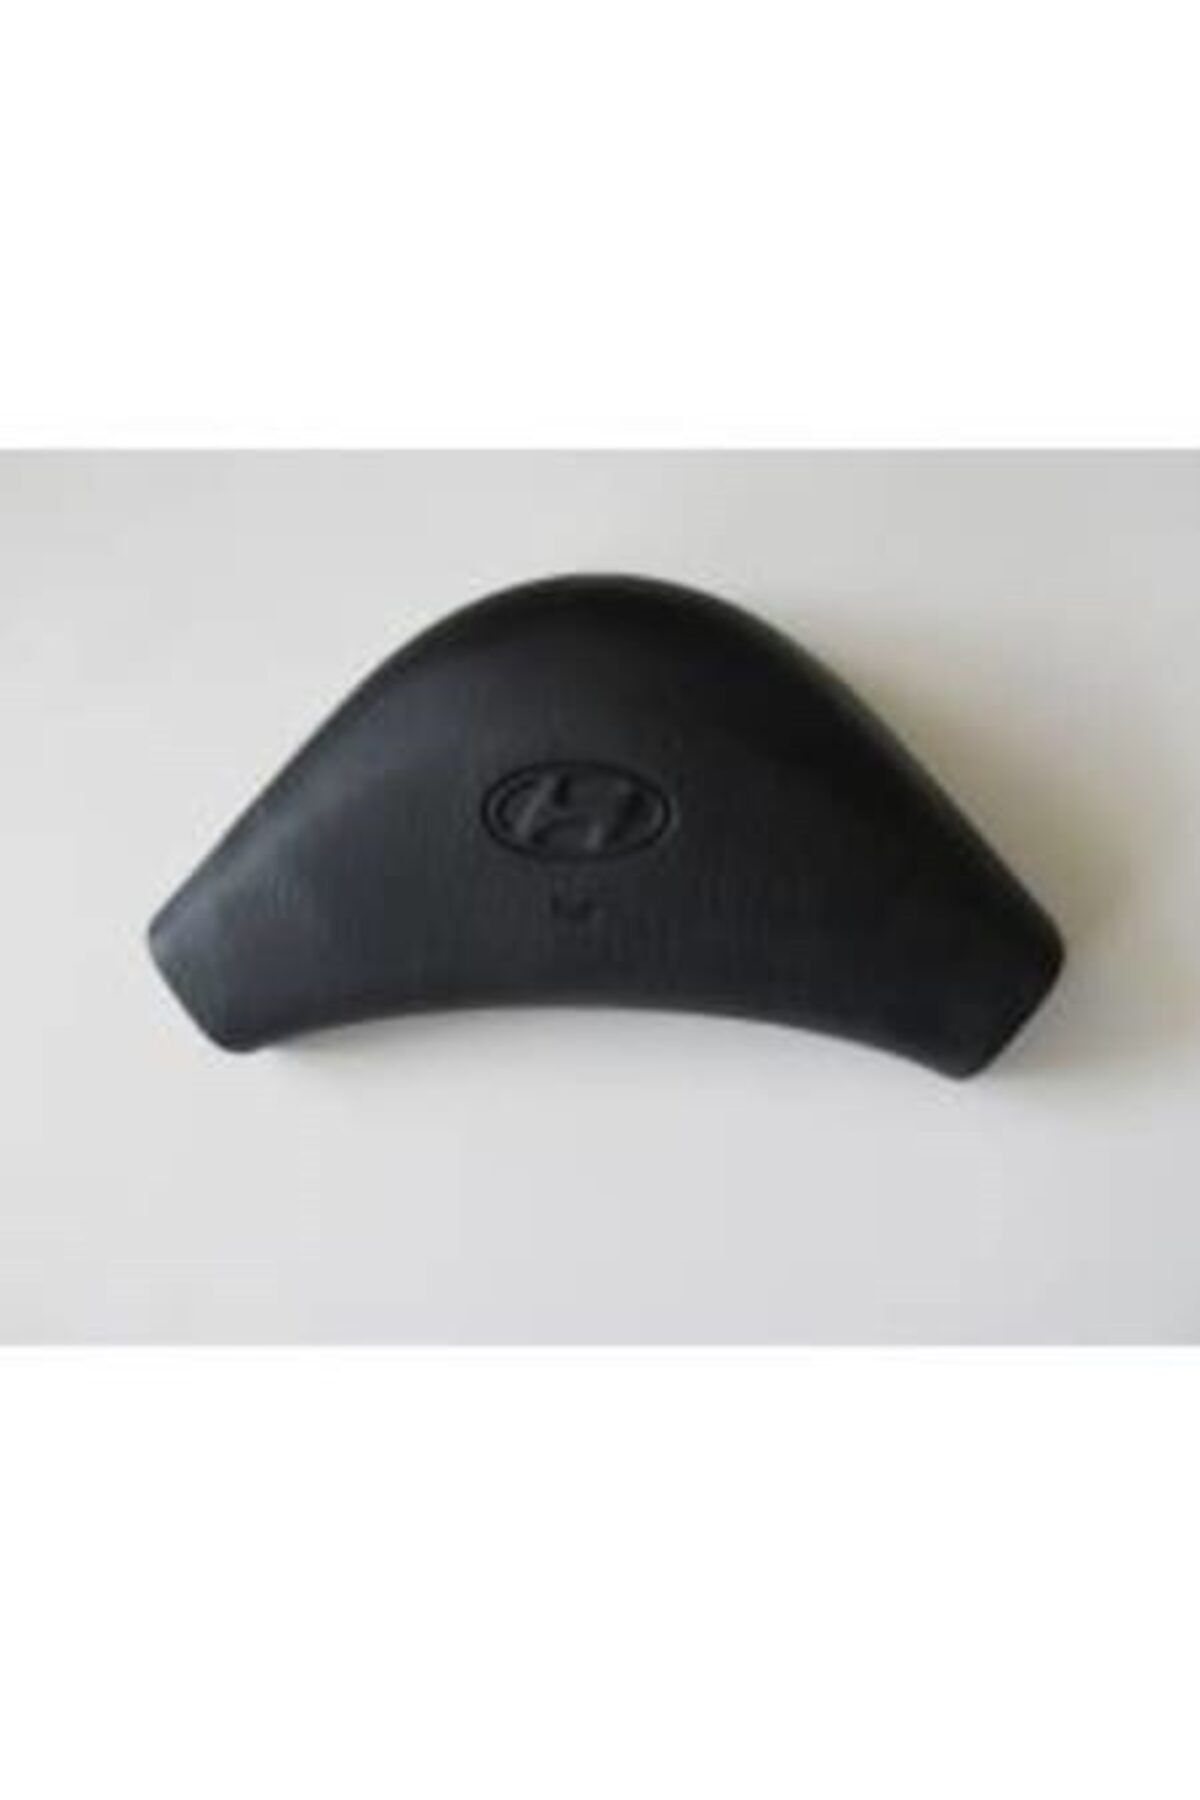 Hyundai Accent 95-00 Korna Kapağı / Kapak Yumurta Kasa 56150-22000